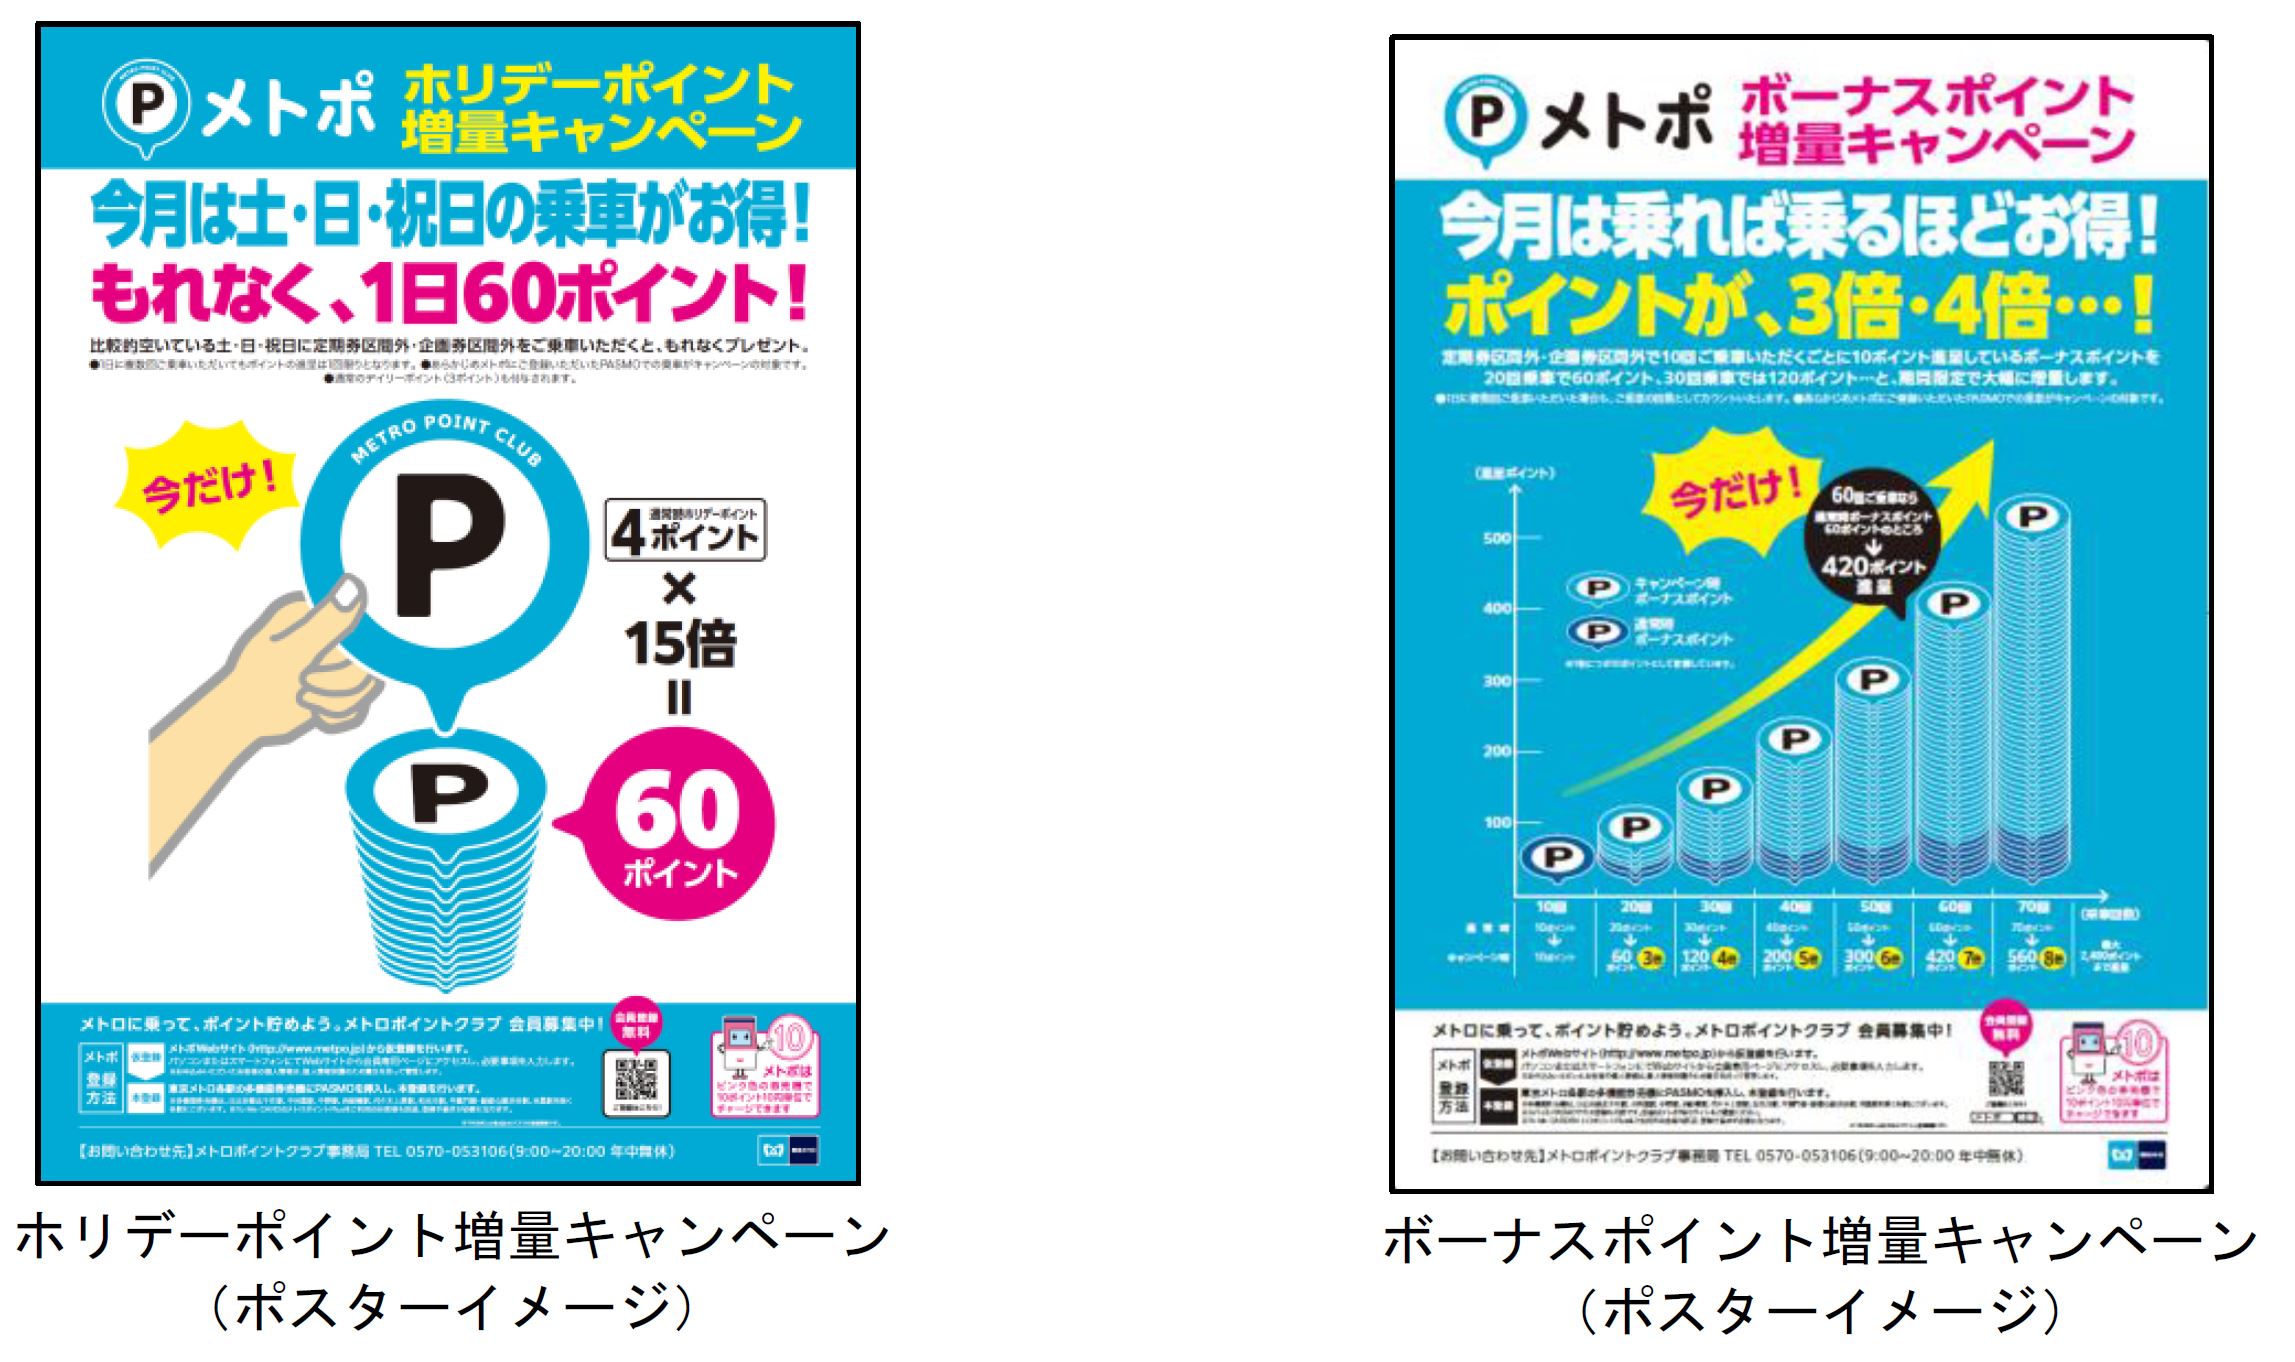 メトポのホリデーポイント及びボーナスポイントの増量キャンペーンを実施します 東京メトロのプレスリリース